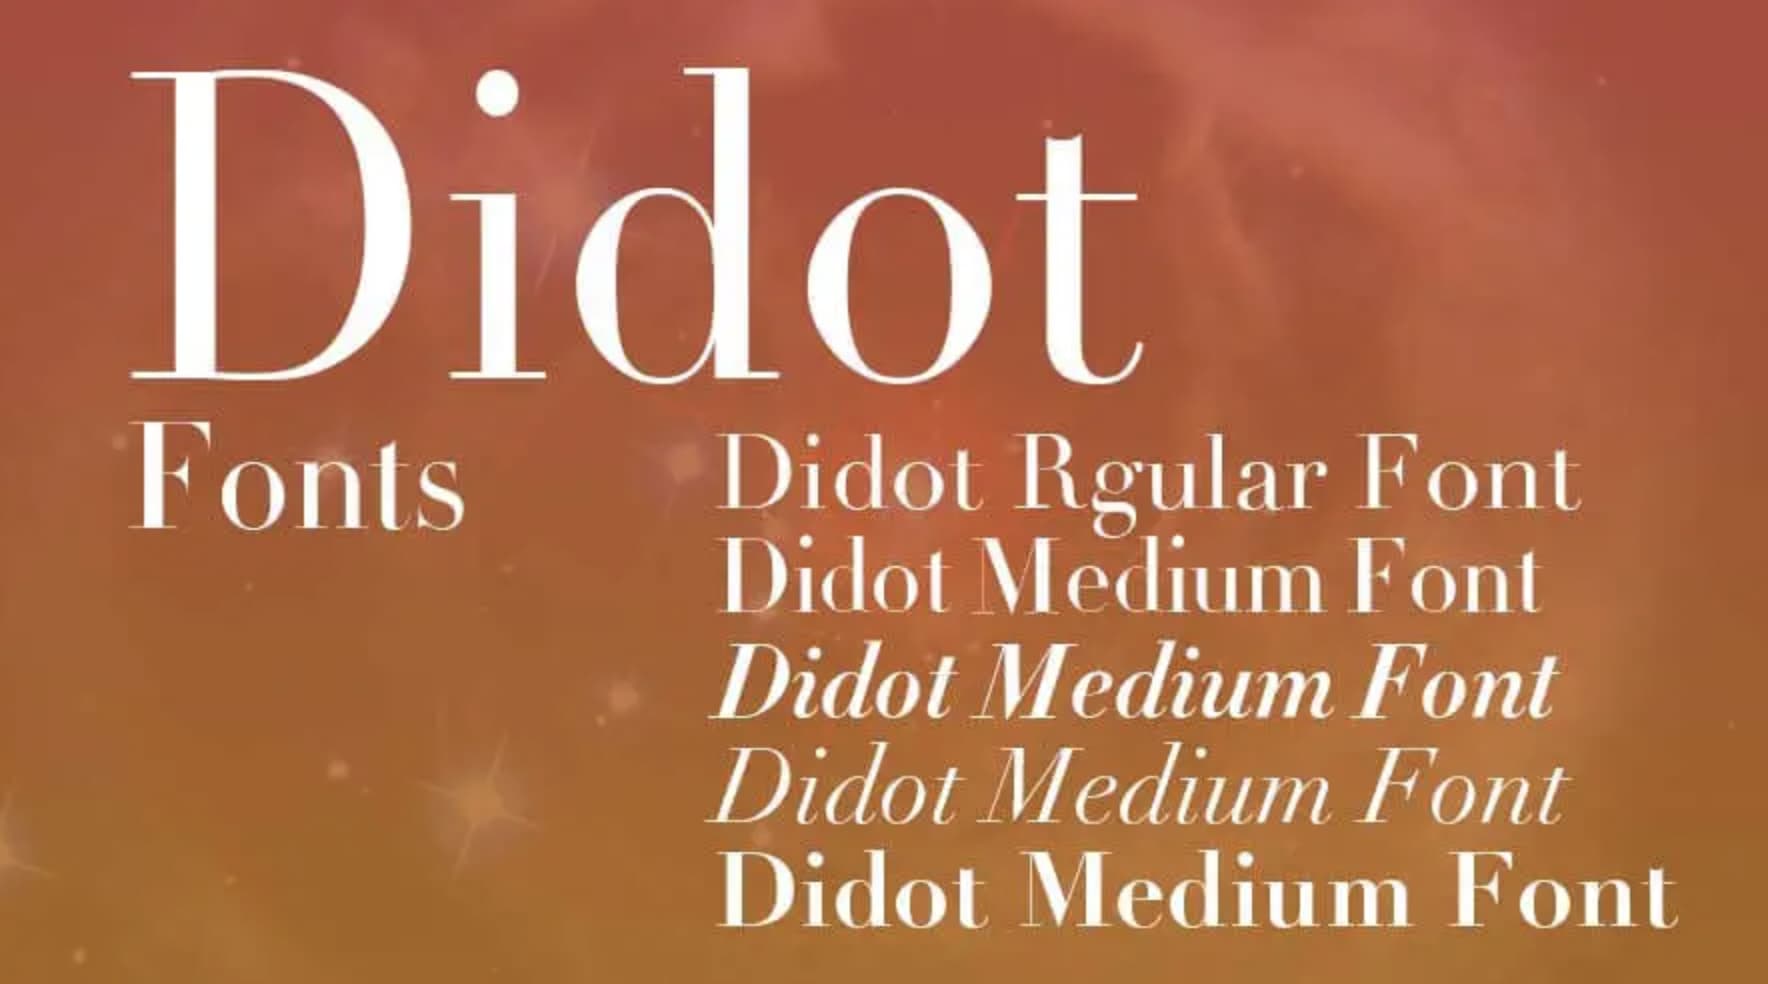 Letras para logos: Didot